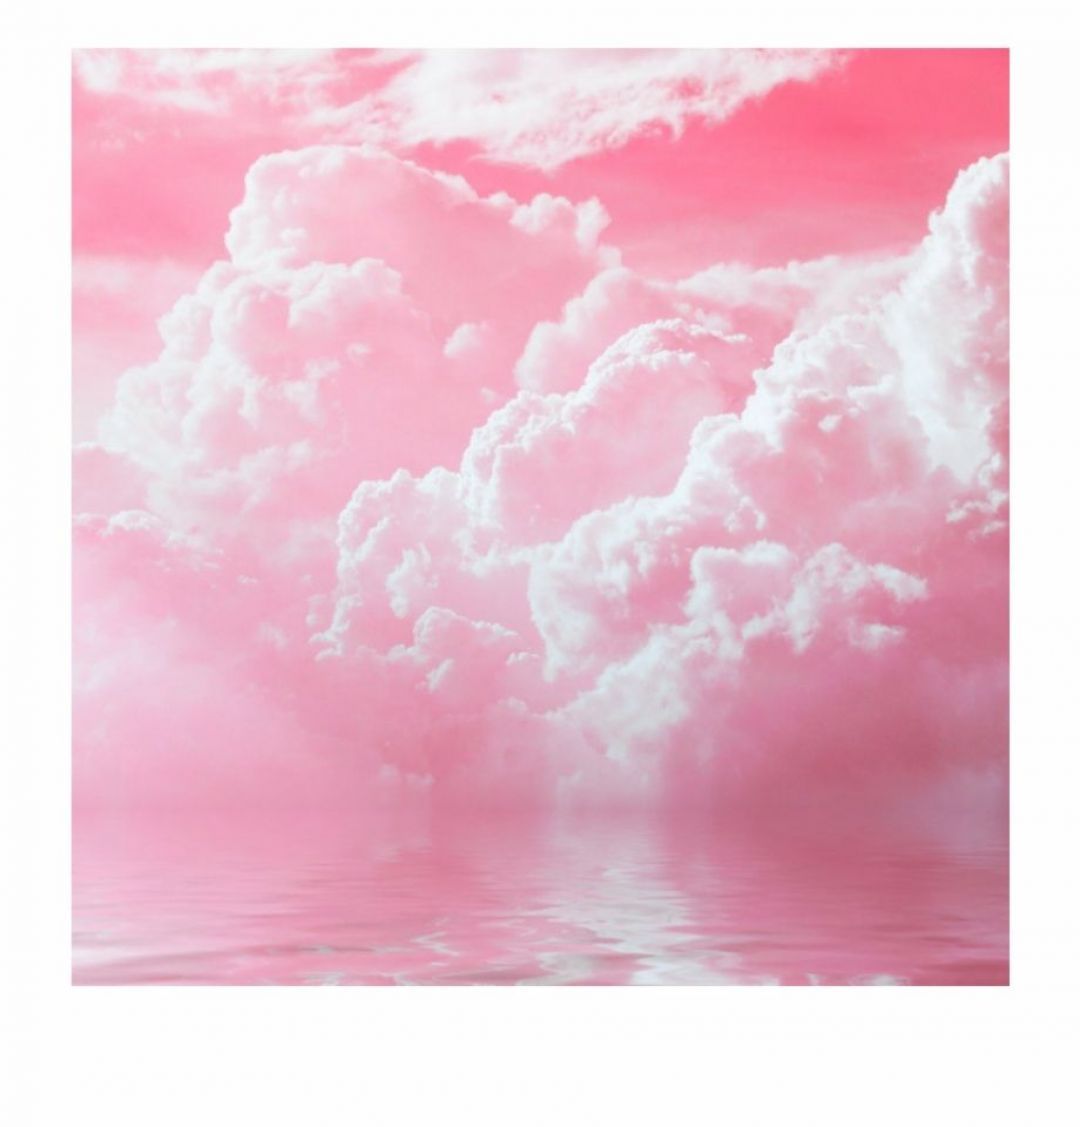 Aesthetic Light Pink Background .teahub.io